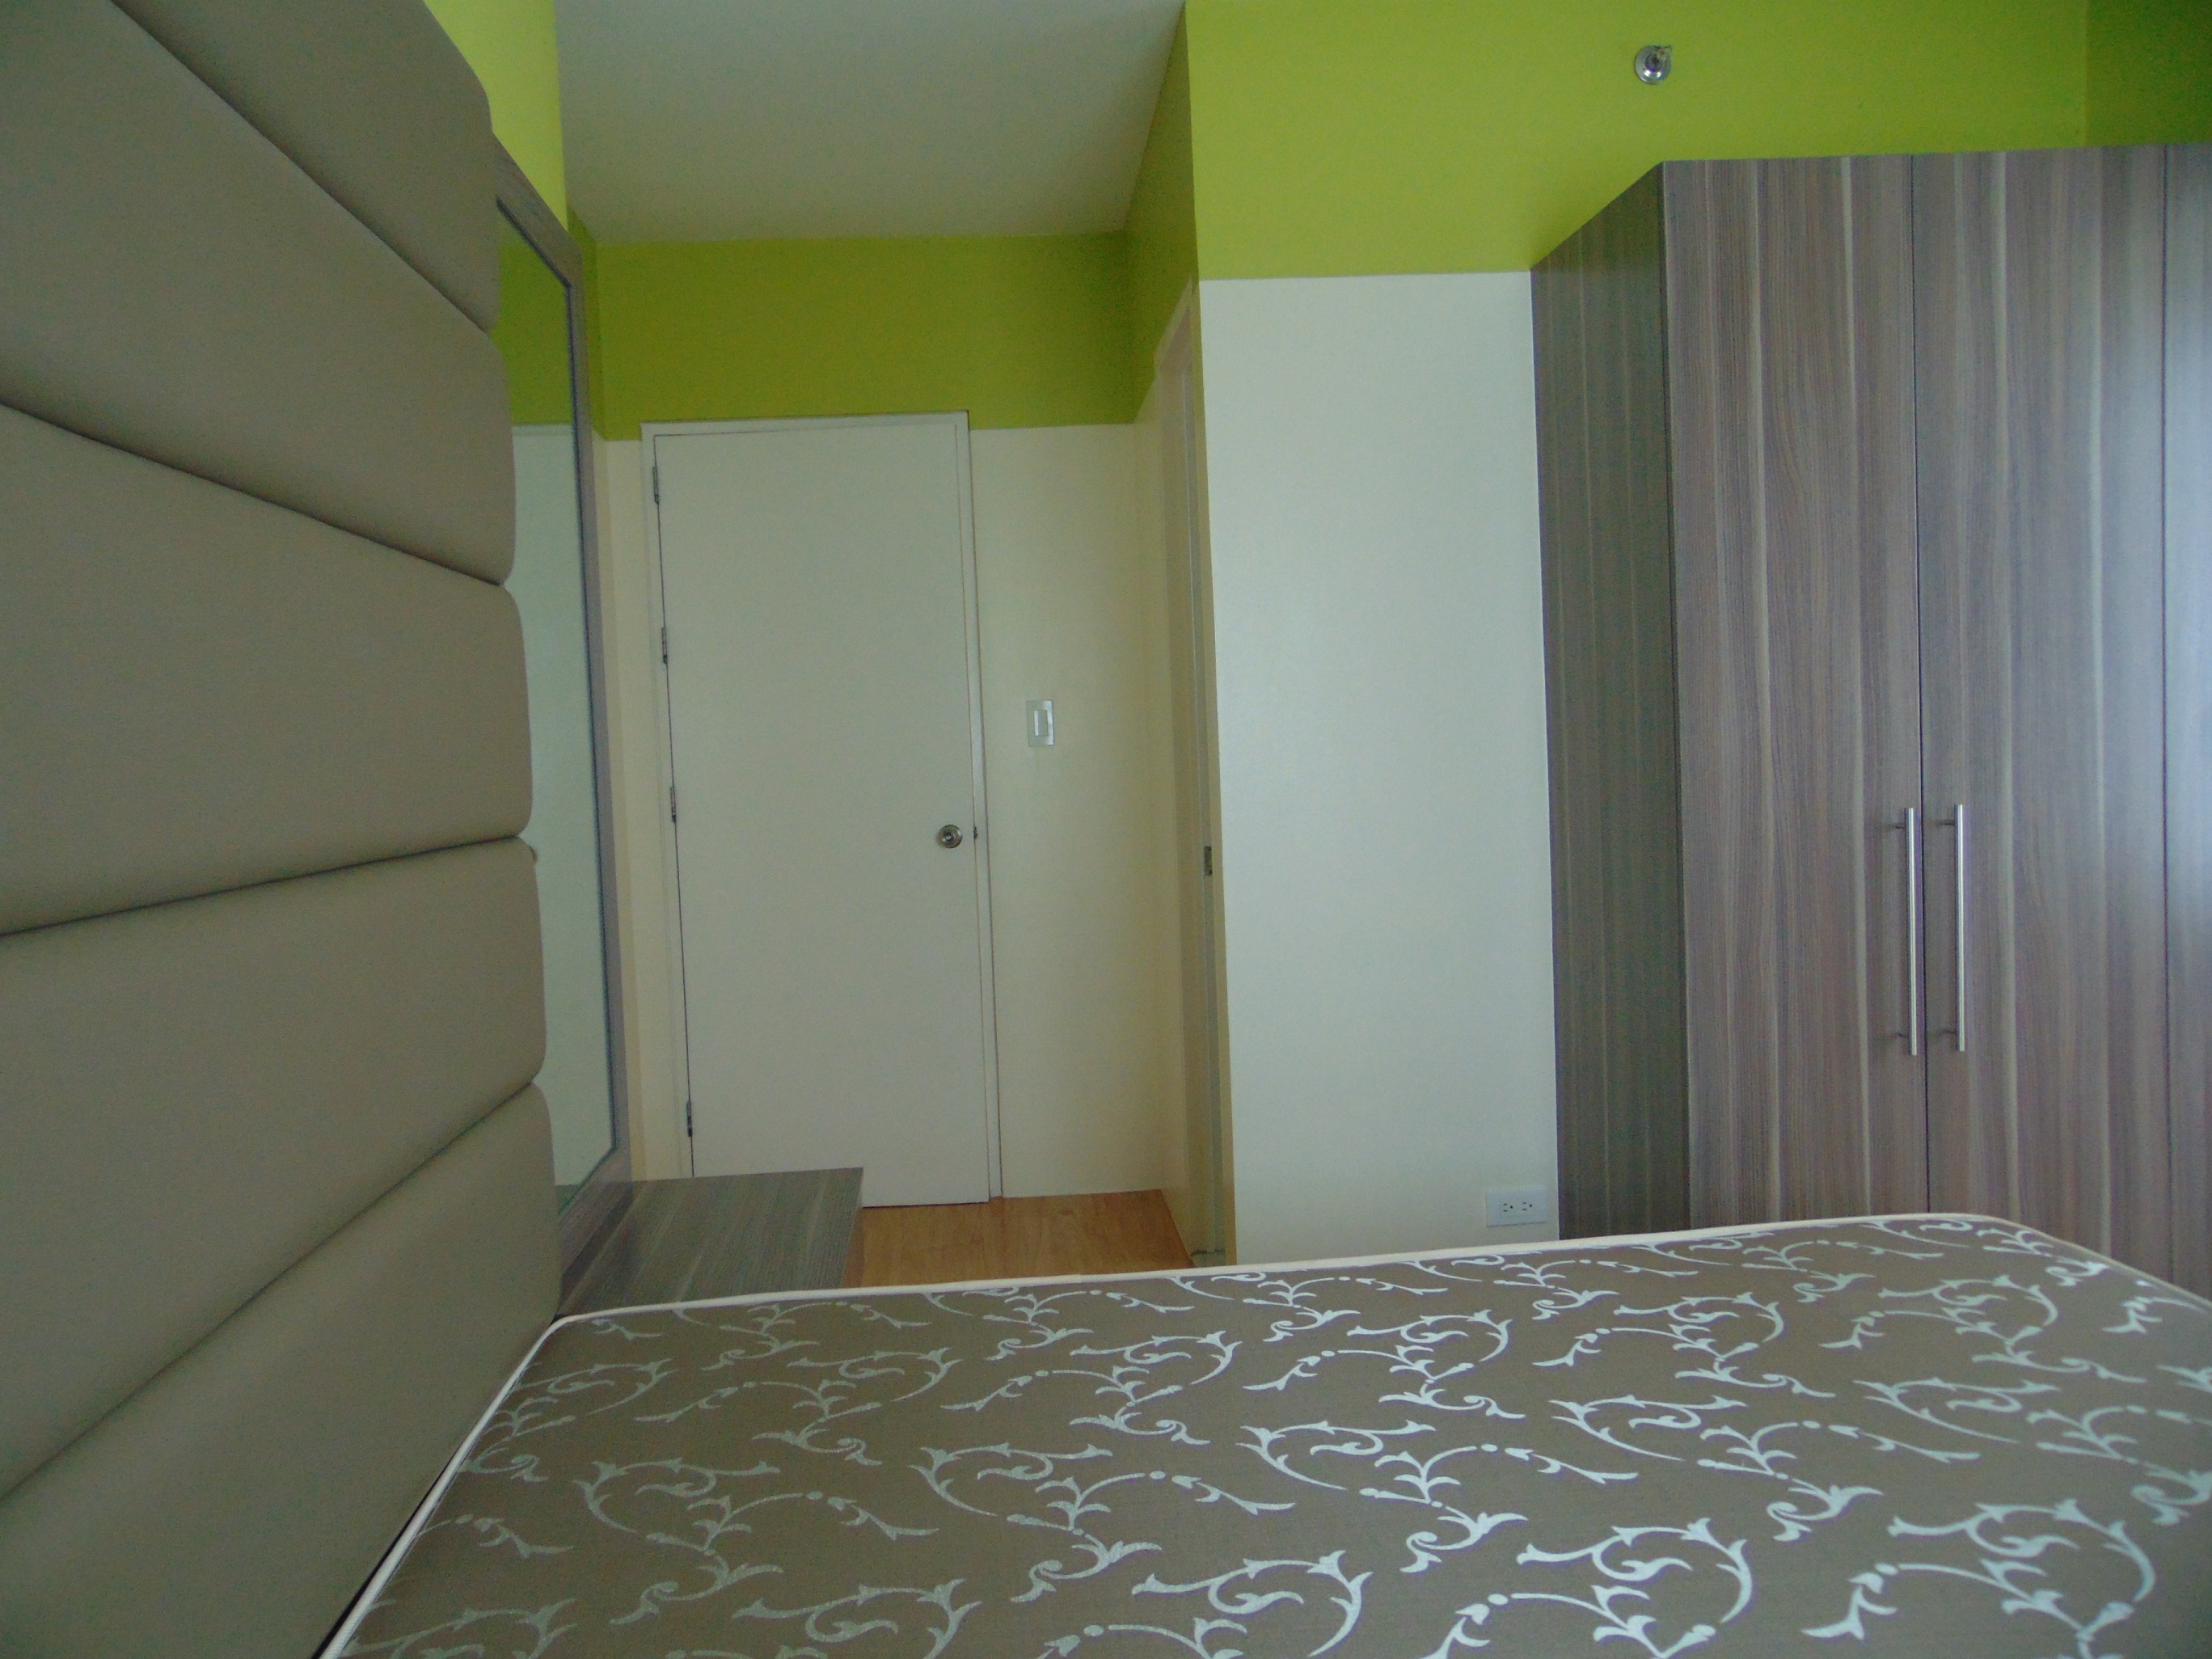 2-bedroom-condominium-located-in-lahug-it-park-cebu-city